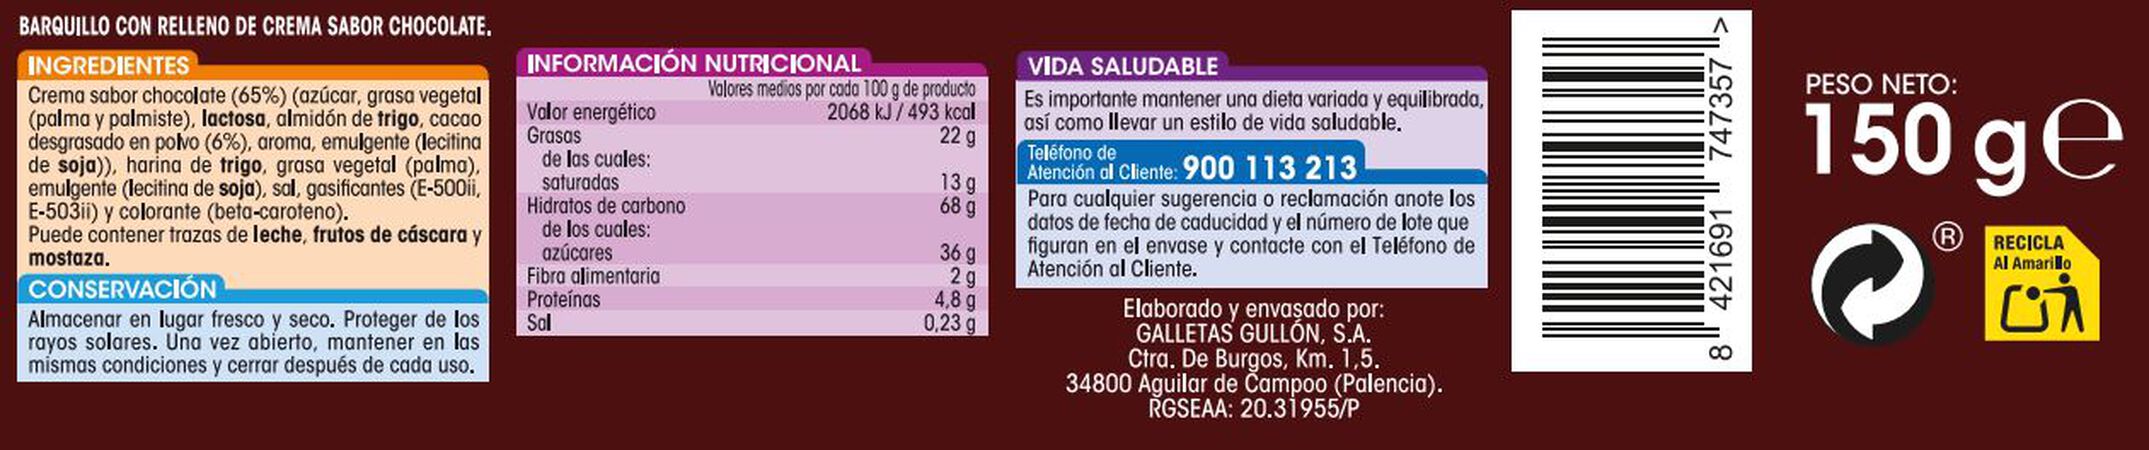 Barquillo Alipende 150g relleno de crema de chocolate